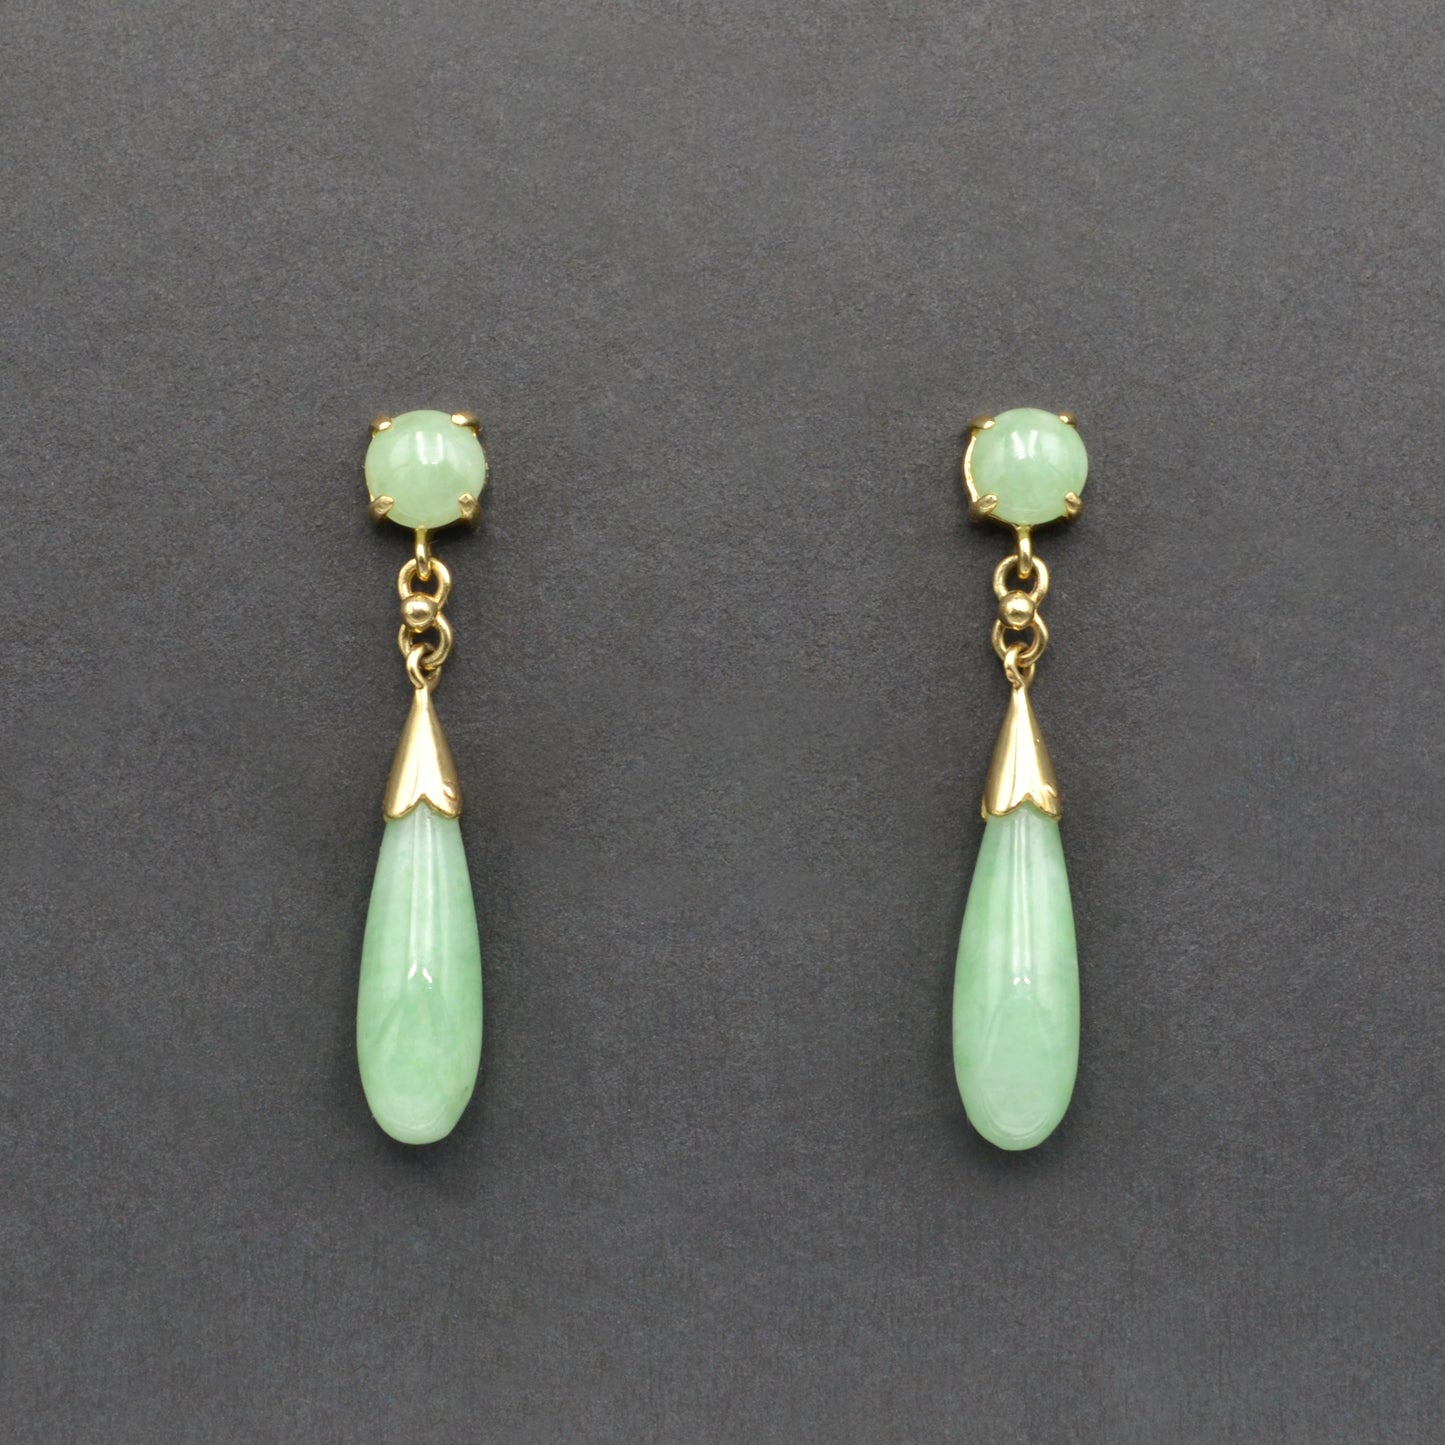 Vintage Light Green Jadeite Jade and 14k Gold Drop Earrings